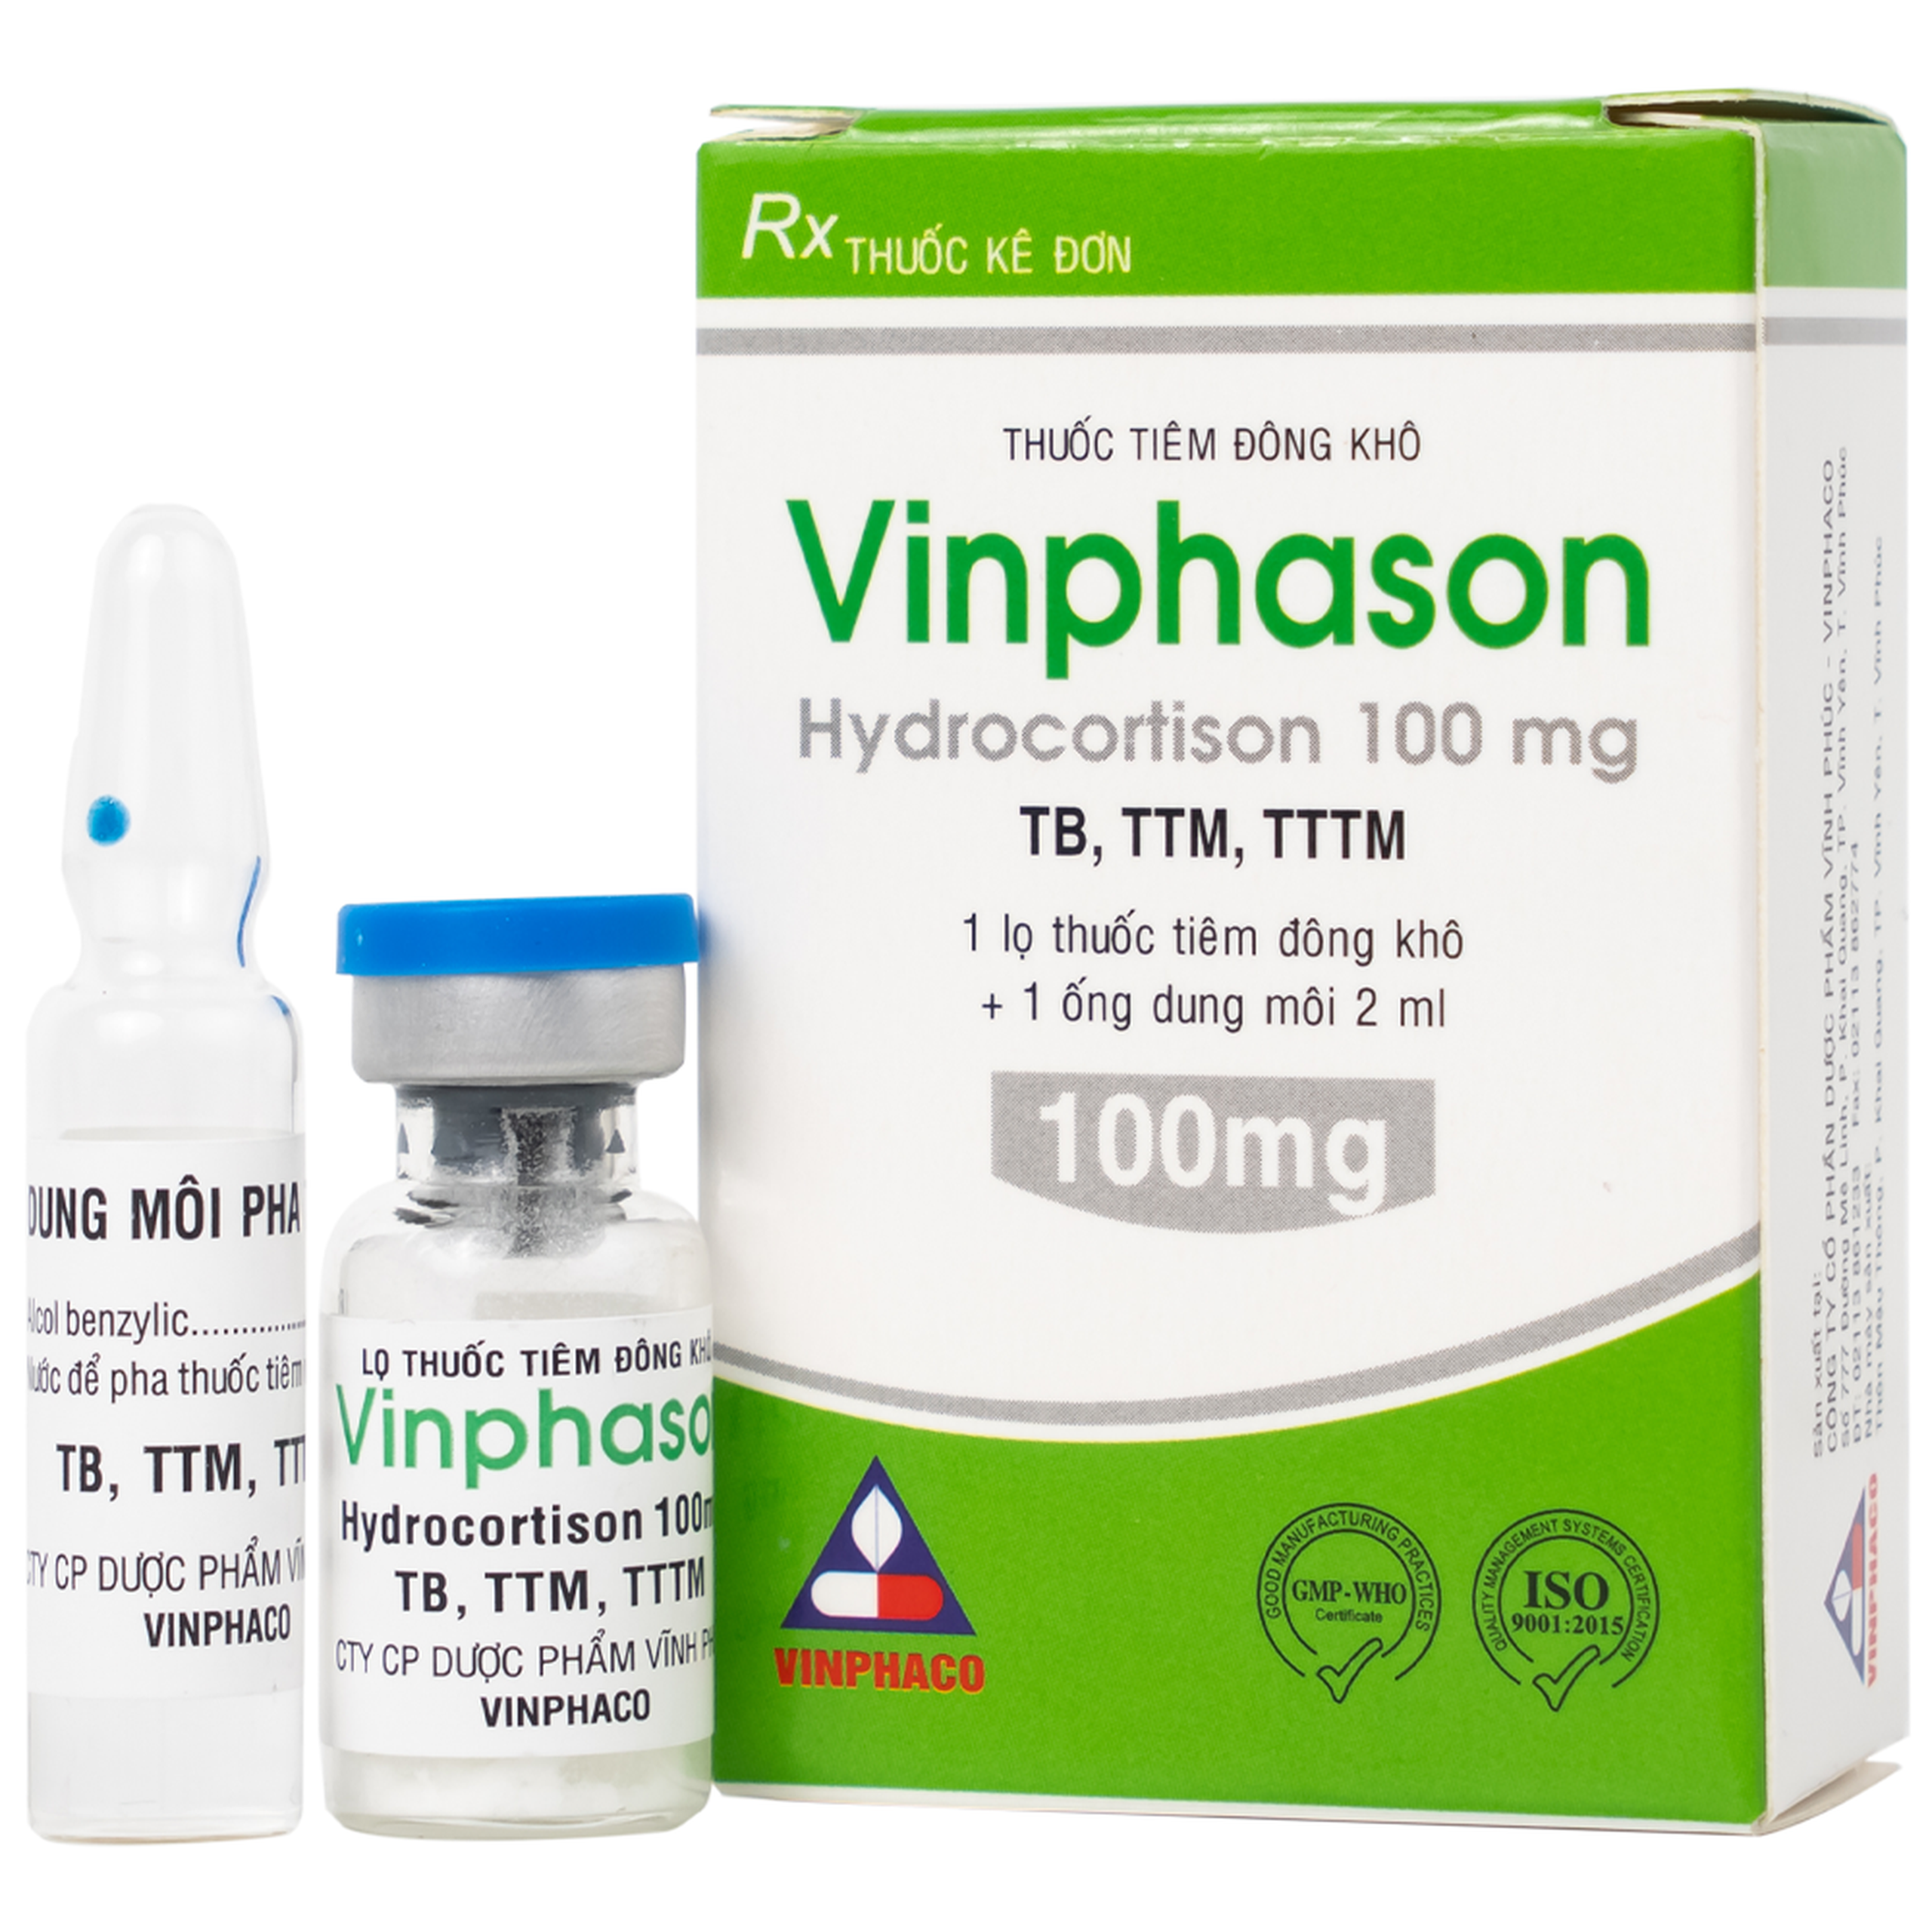 Thuốc tiêm Vinphason 100mg Vinphaco điều trị lupus ban đỏ hệ thống, hồng ban đa dạng nặng (1 lọ + 1 ống)